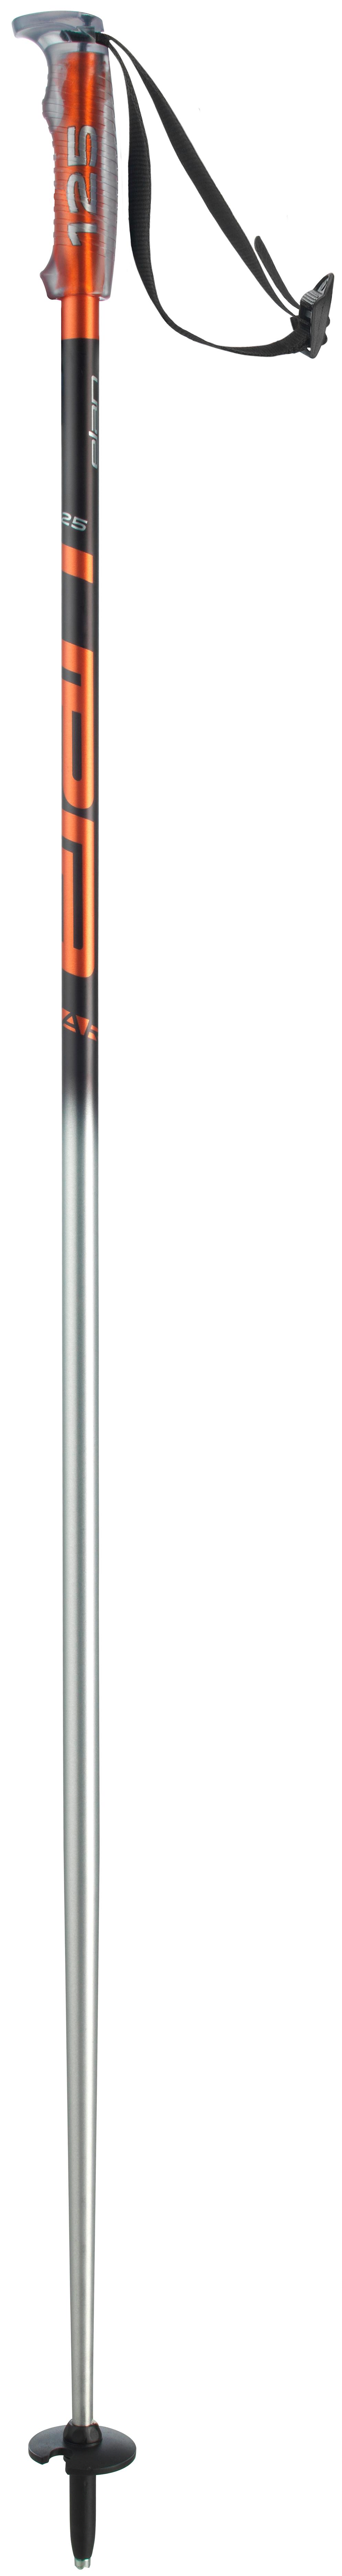 Горнолыжные палки Elan Sp Exar 2021, black silver, 115 см